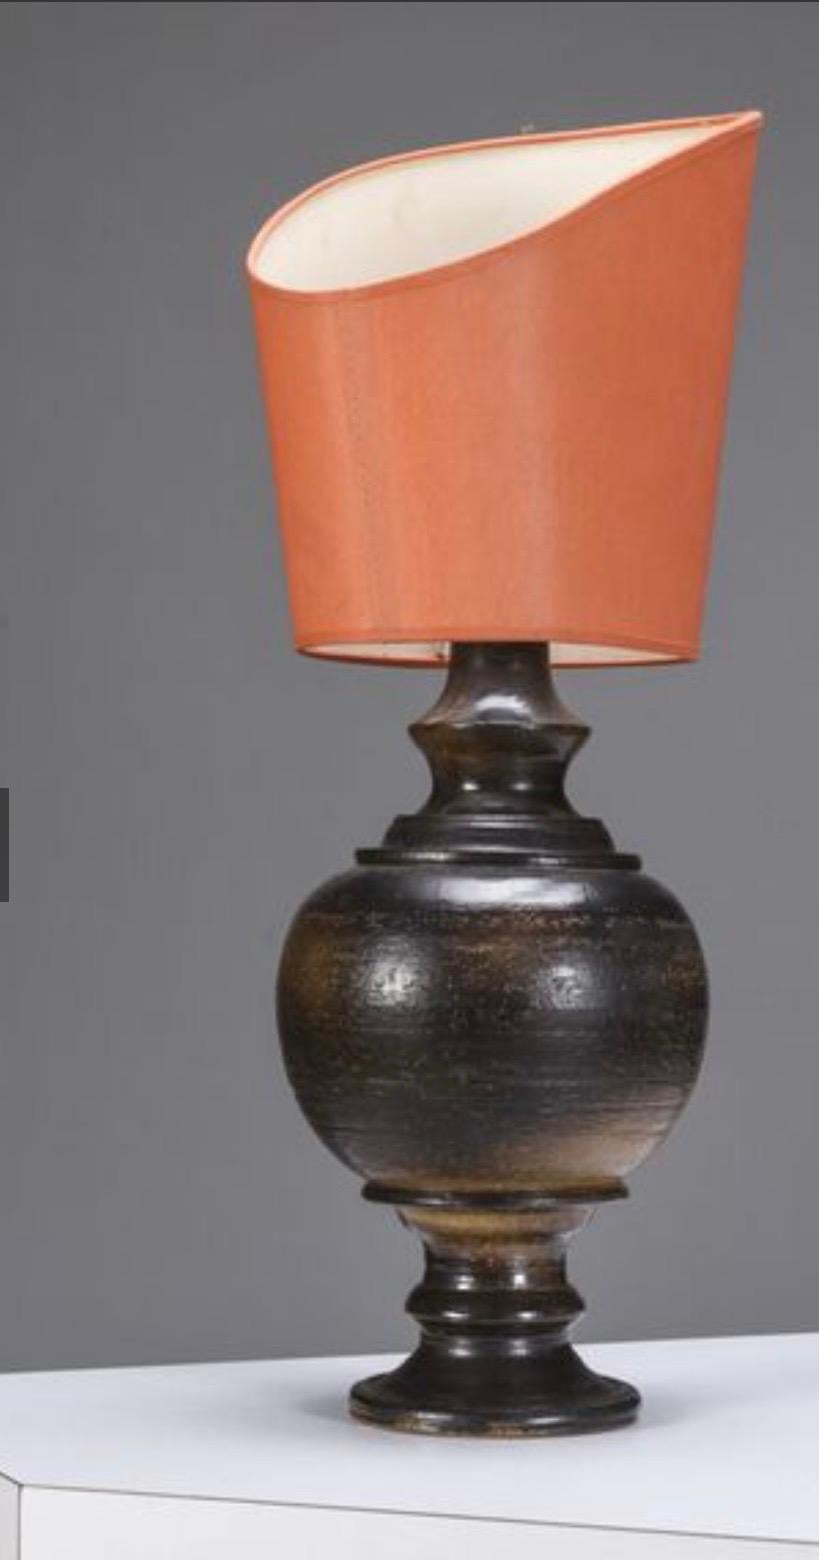 Schwarze Keramik-Tischlampe mit Originalschirm, signiert auf dem Sockel Jean Marais (1913-1998).